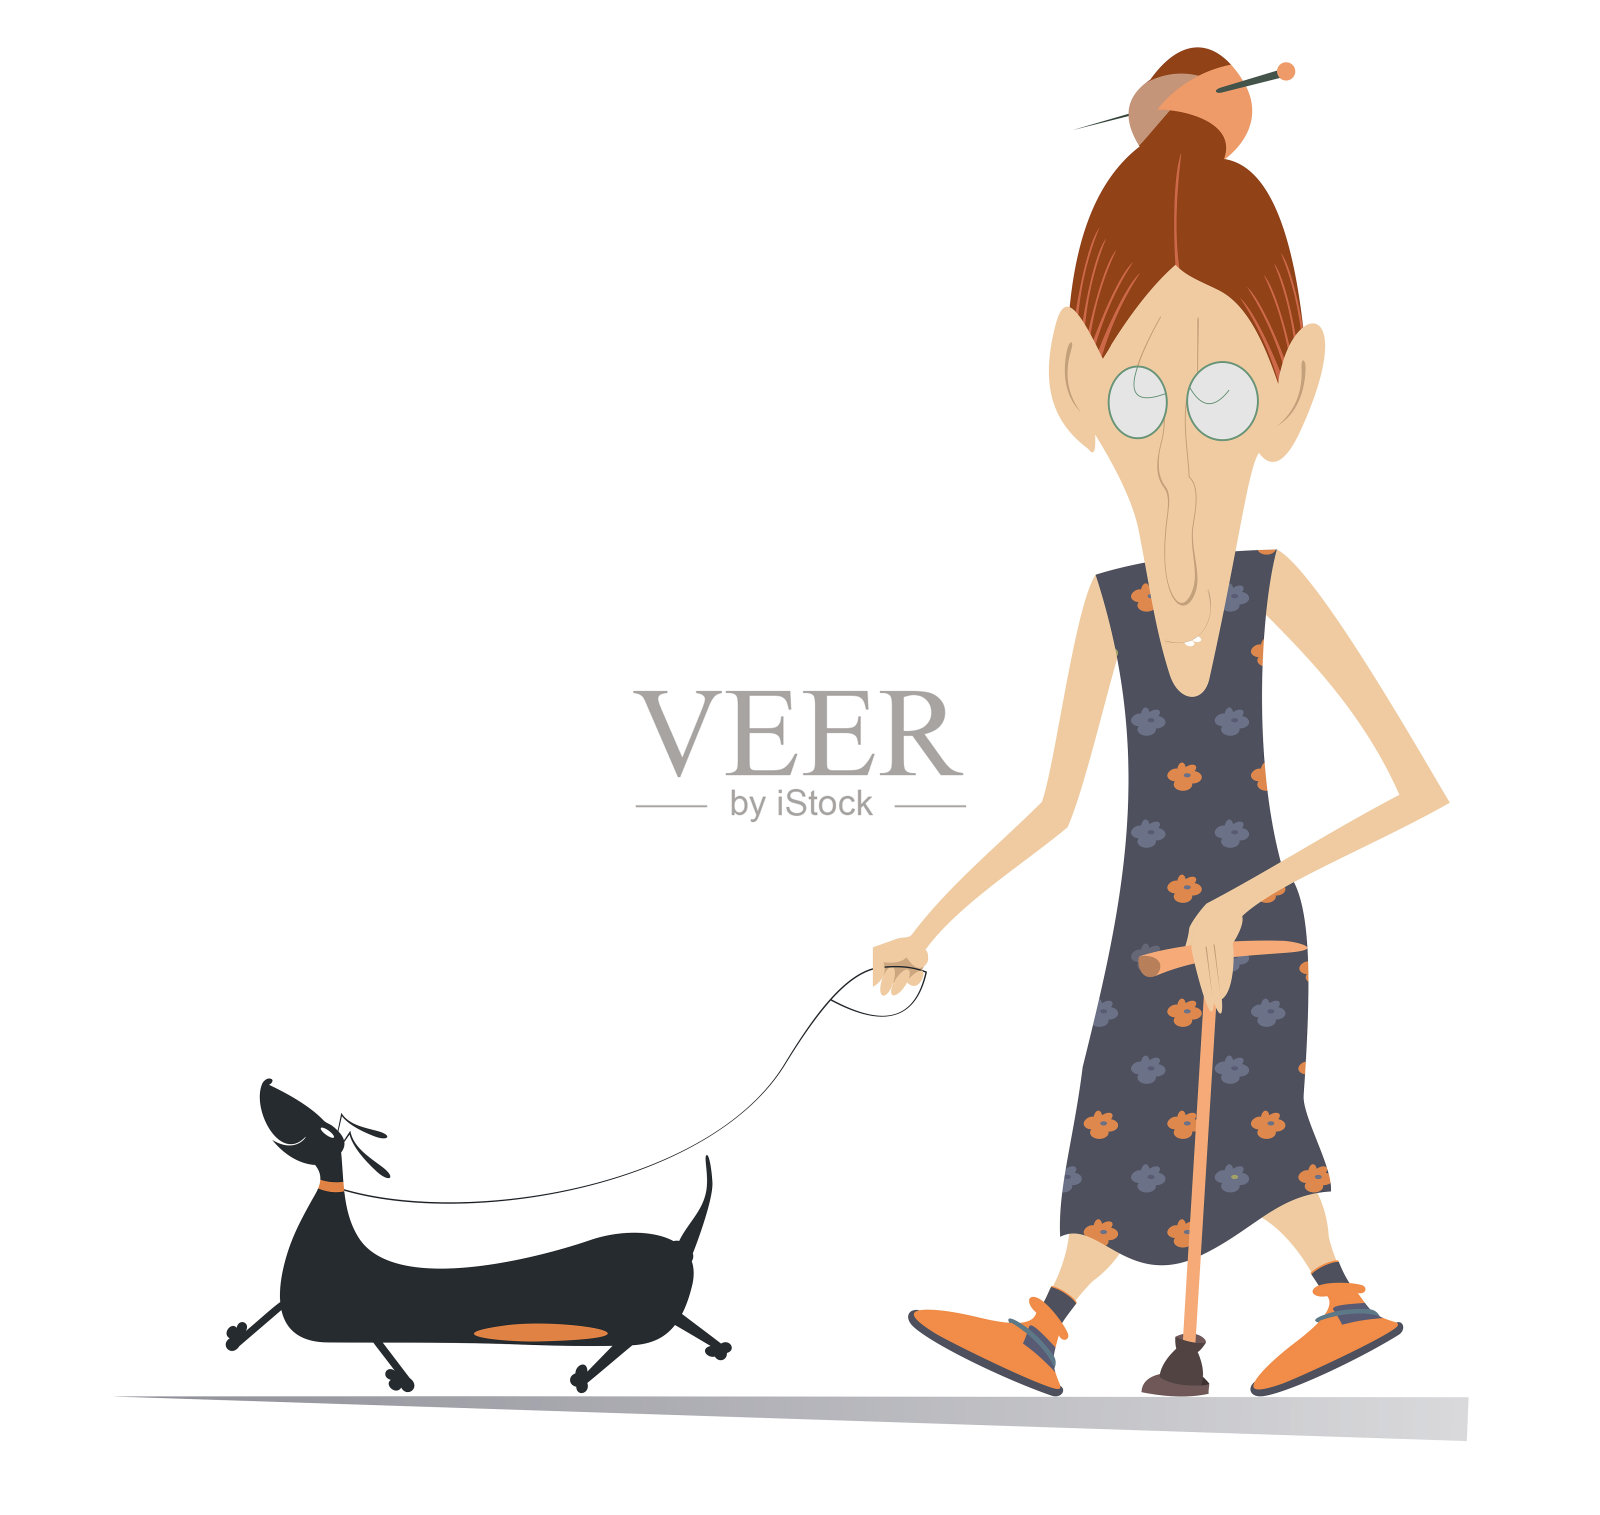 漫画中的老年妇女拄着拐杖走路，而插图中的狗被孤立了插画图片素材